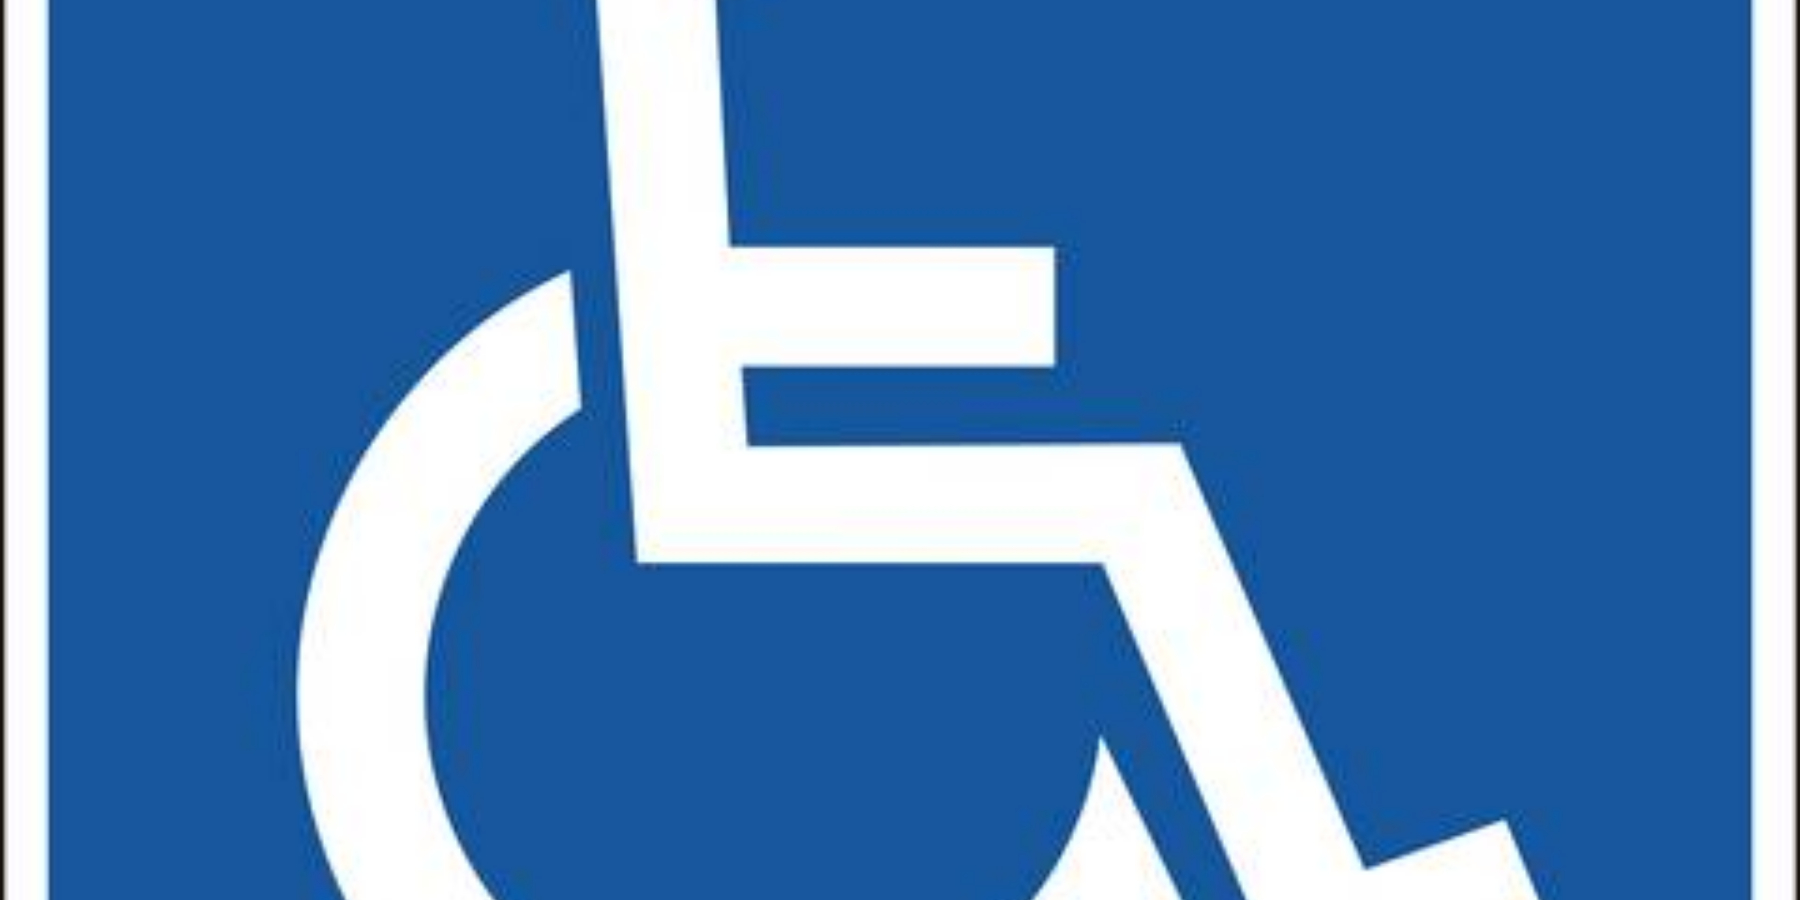 Adattamento guida per disabili TECHAUTO: Immagine Elenchi